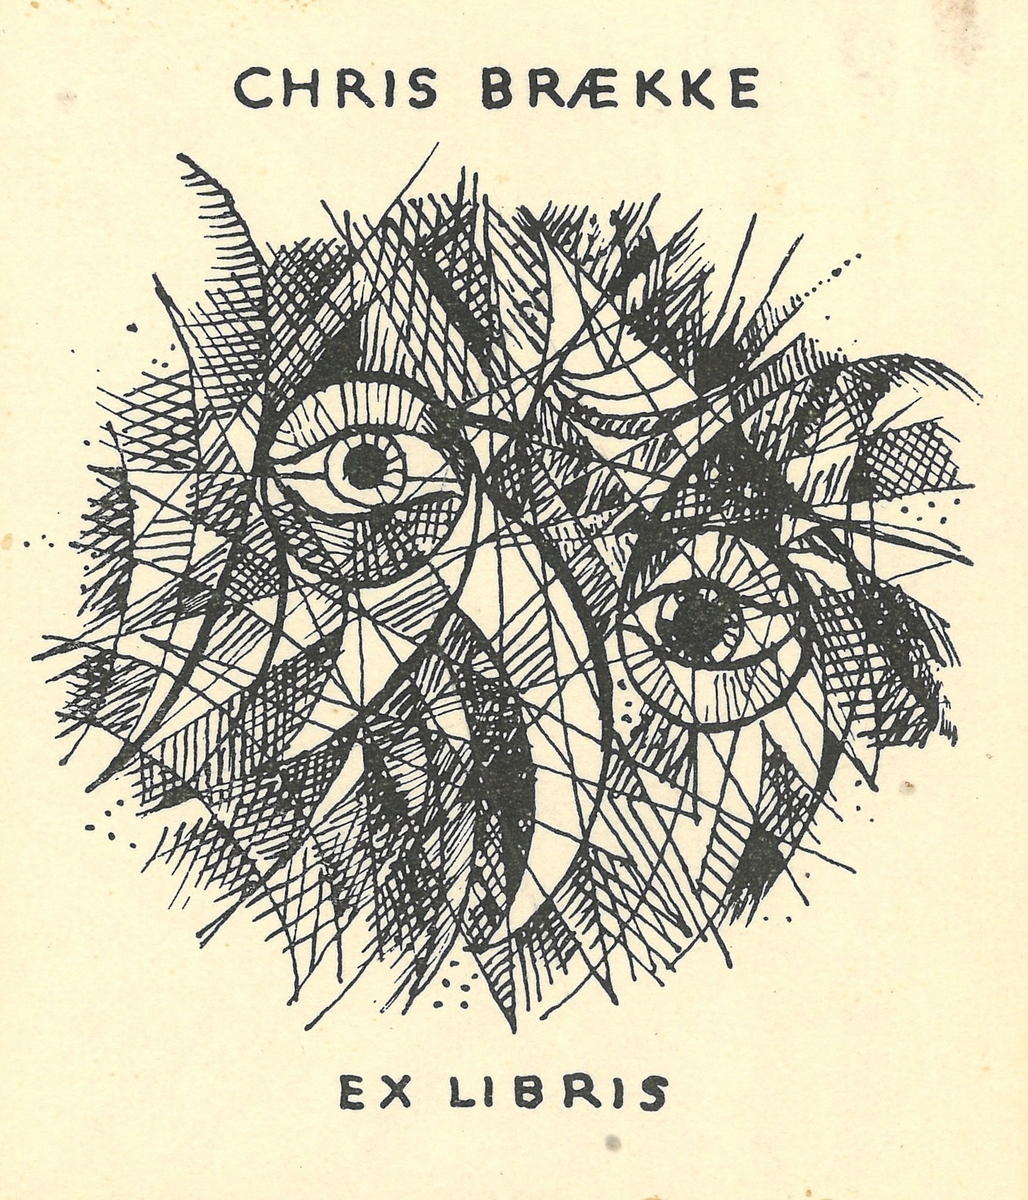 Ex libris for Chris Brække